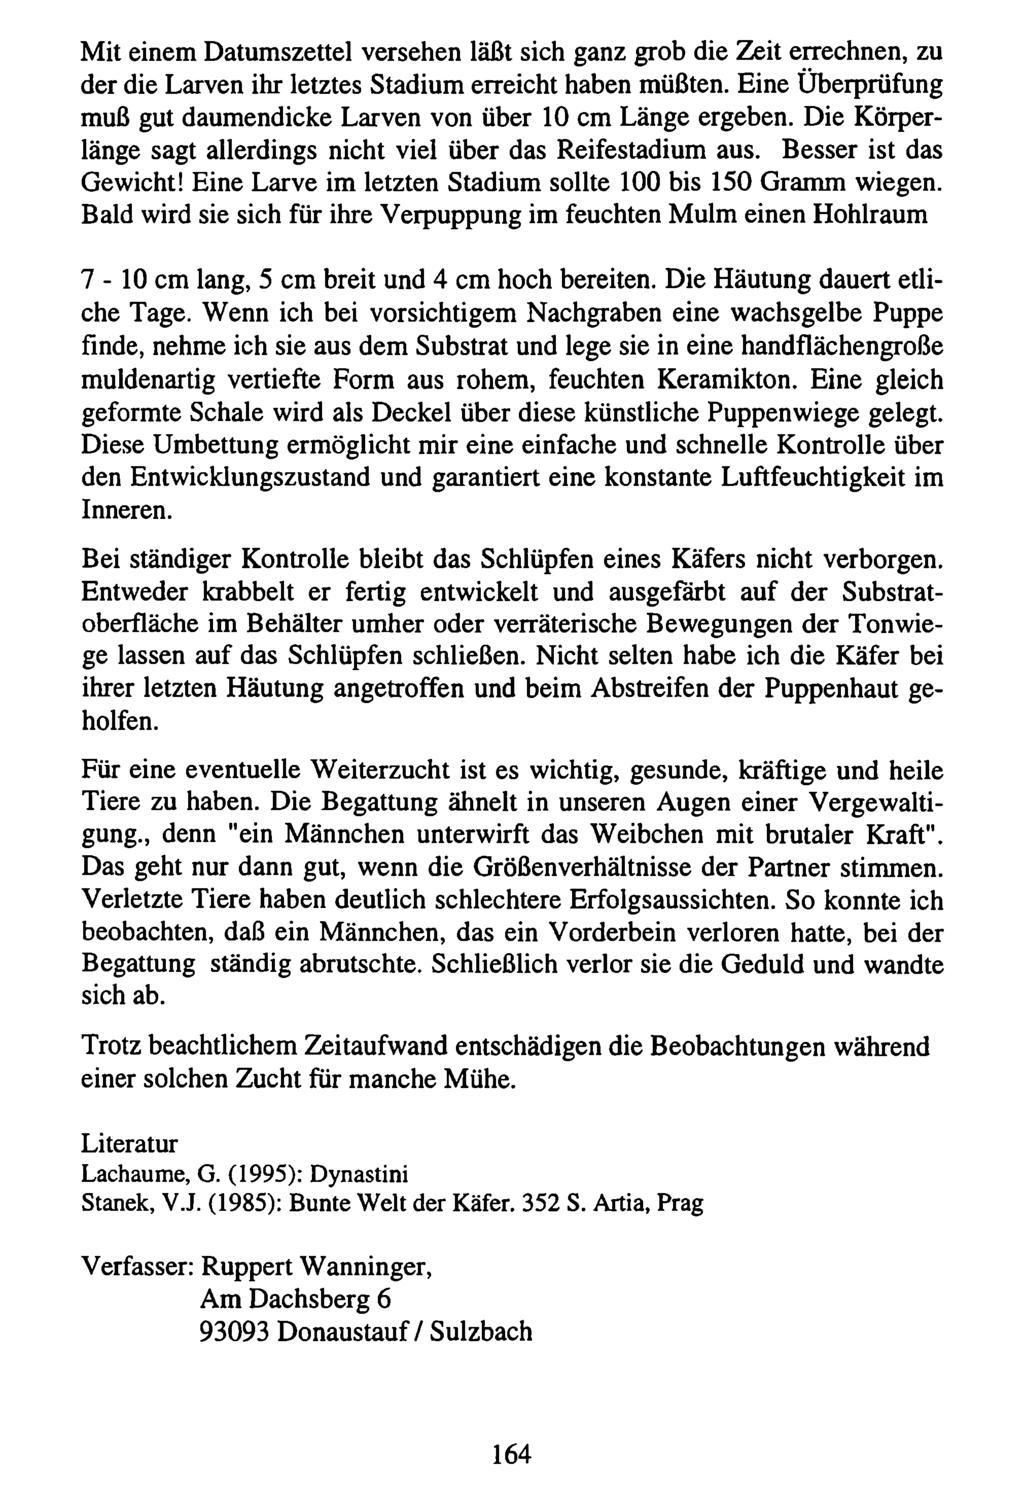 Mit einem Datumszettel Kreis Nürnberger versehen Entomologen; läßt download sich unter ganz www.biologiezentrum.at grob die Zeit errechnen, zu der die Larven ihr letztes Stadium erreicht haben müßten.